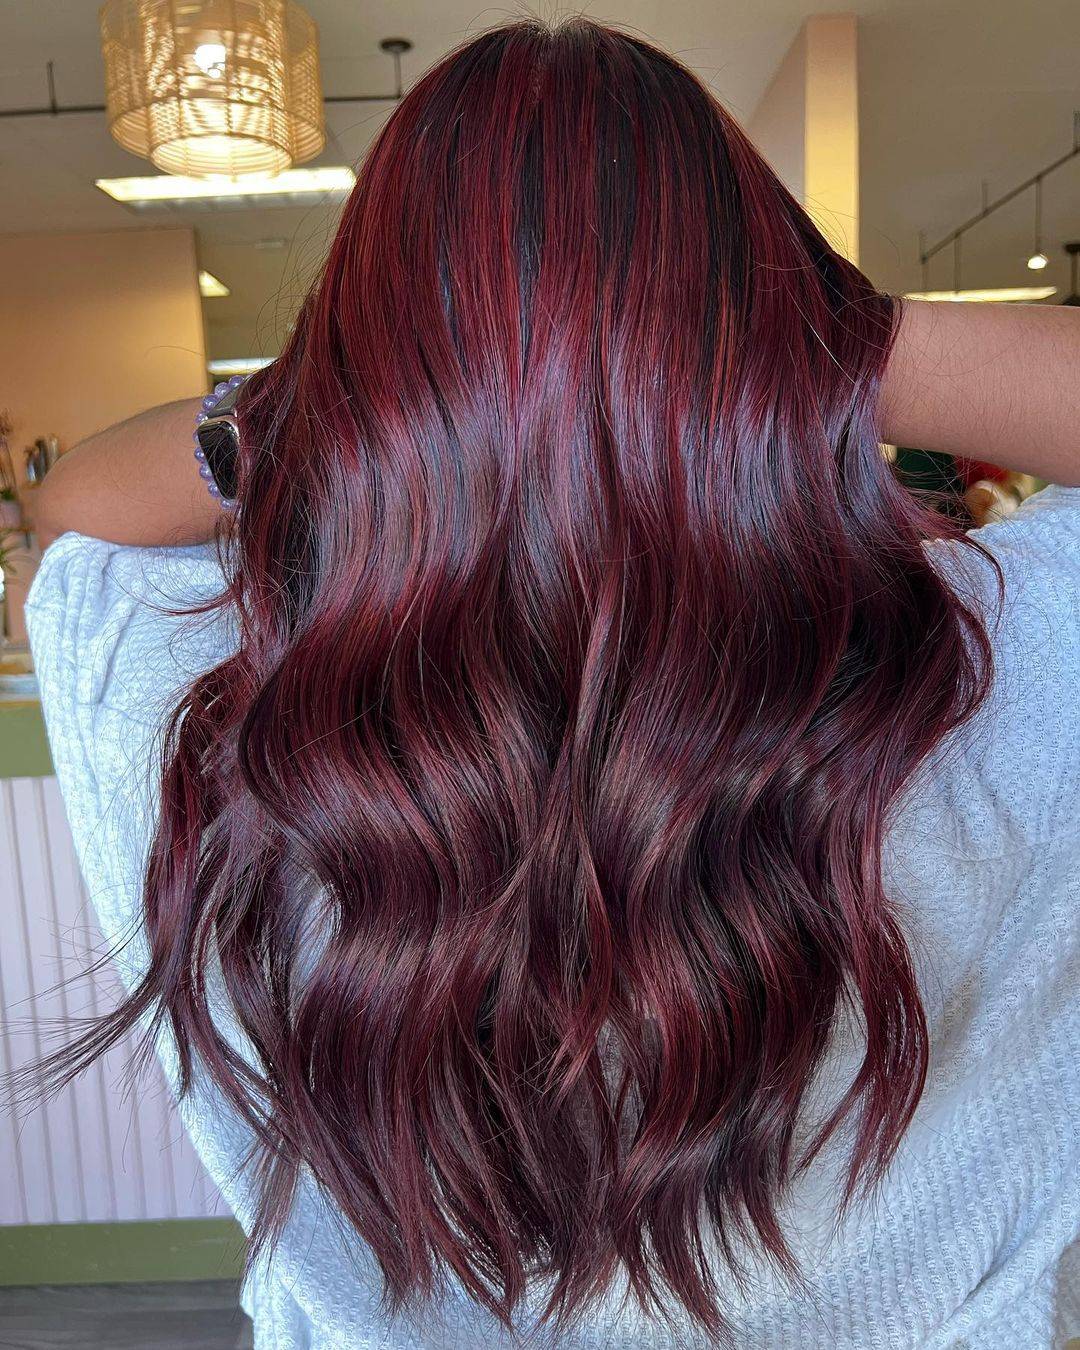 Burgundy hair color 273 burgundy hair color | burgundy hair color for women | burgundy hair color highlights Burgundy Hair Color